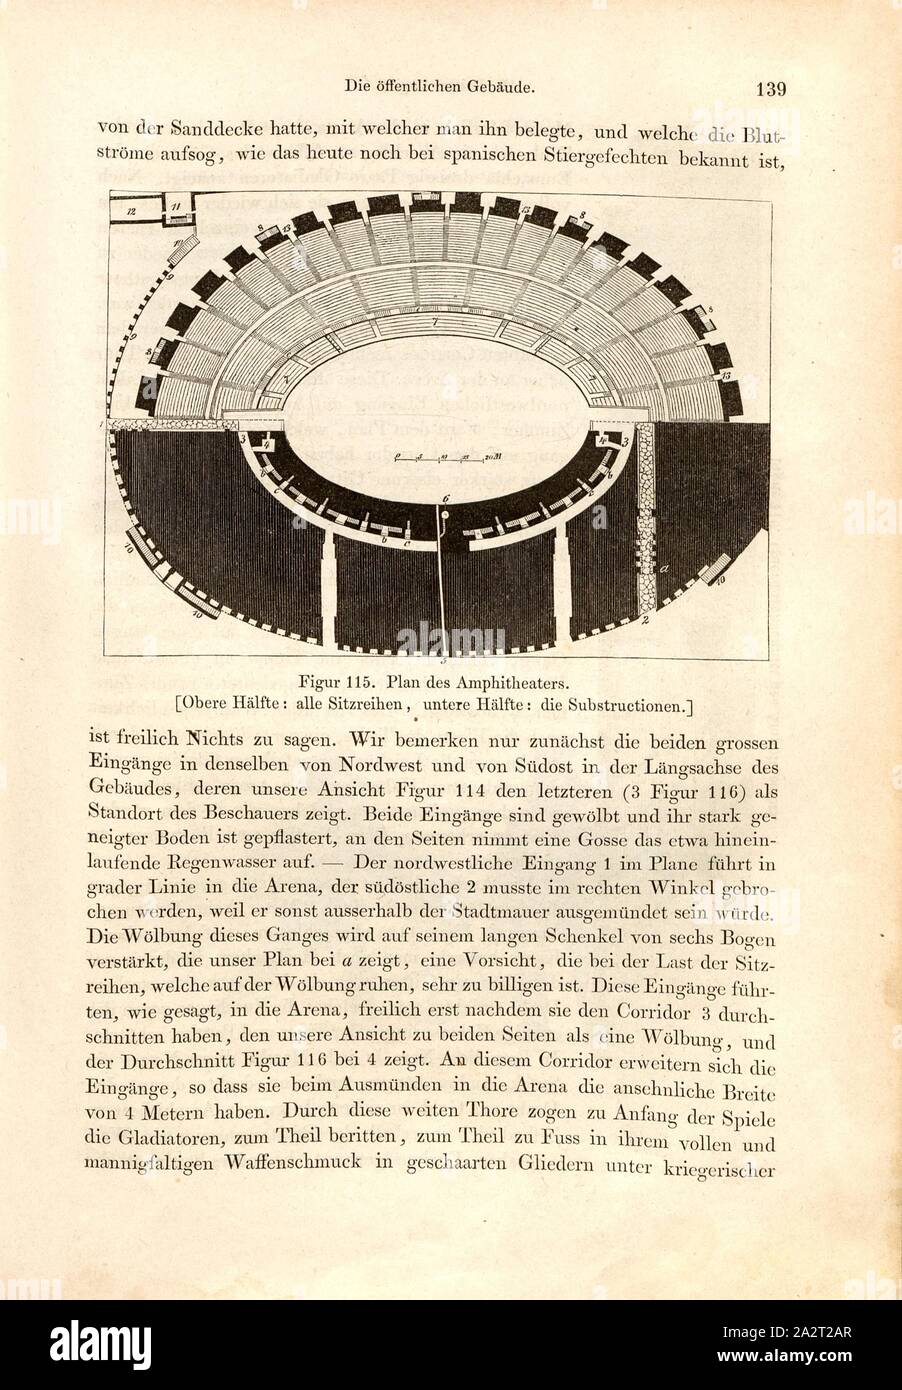 Plan des Amphitheaters, Plan Amphitheater in Pompeii, Fig. 115, p. 139, 1856, Johannes Overbeck: Pompeji in seinen Gebäuden, Alterthümern und Kunstwerken [...]. Leipzig: Verlag von Wilhelm Engelmann, 1856 Stock Photo